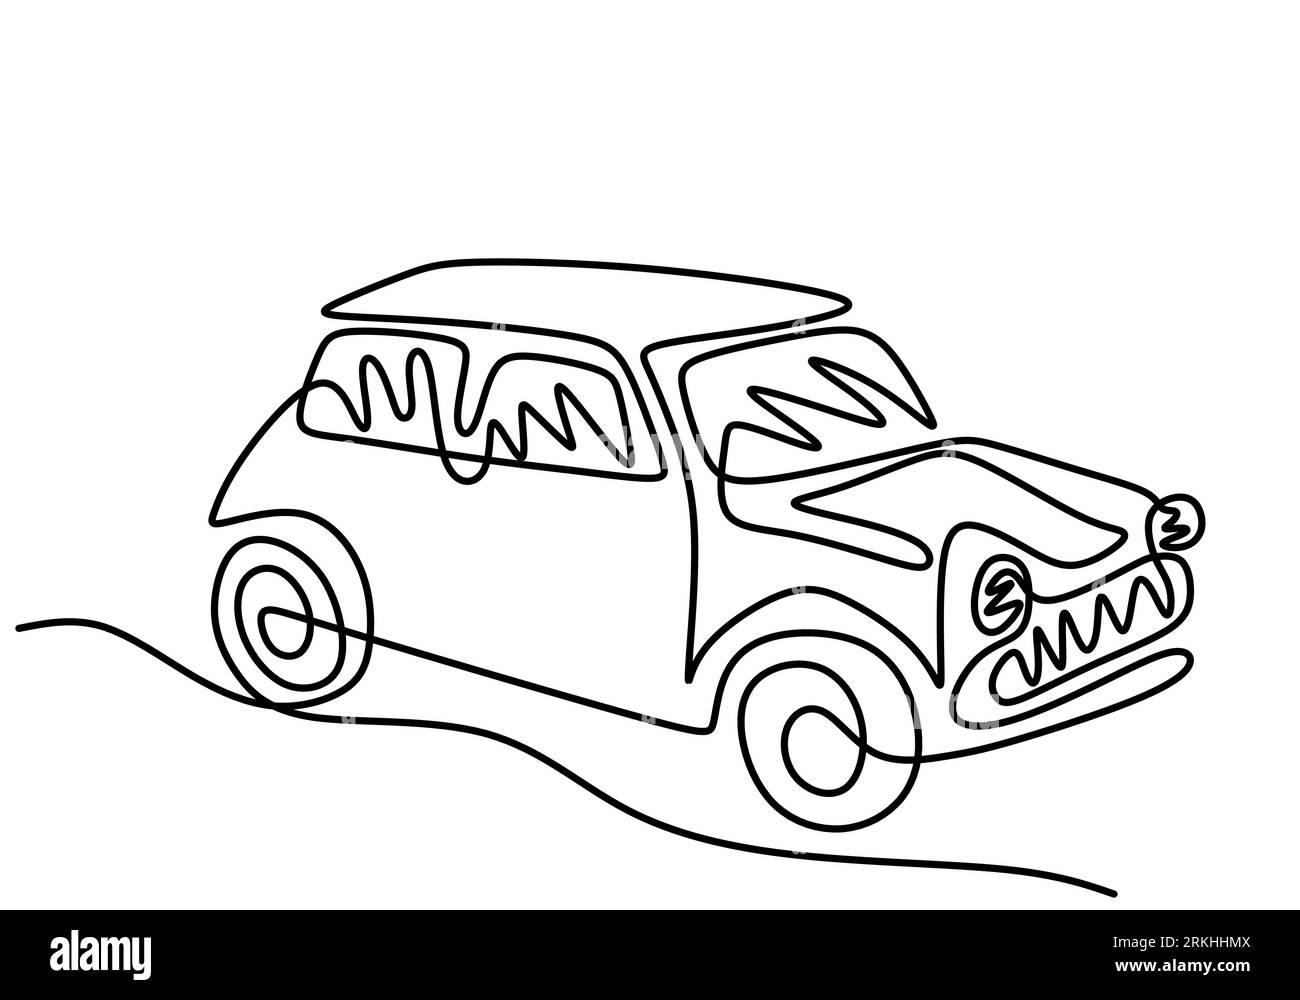 Un dessin au trait continu de la voiture classique BWM Mini Cooper Sport. Voiture de course vintage conduisant sur route poussiéreuse. Concept de véhicule de transport classique. Illustration de Vecteur